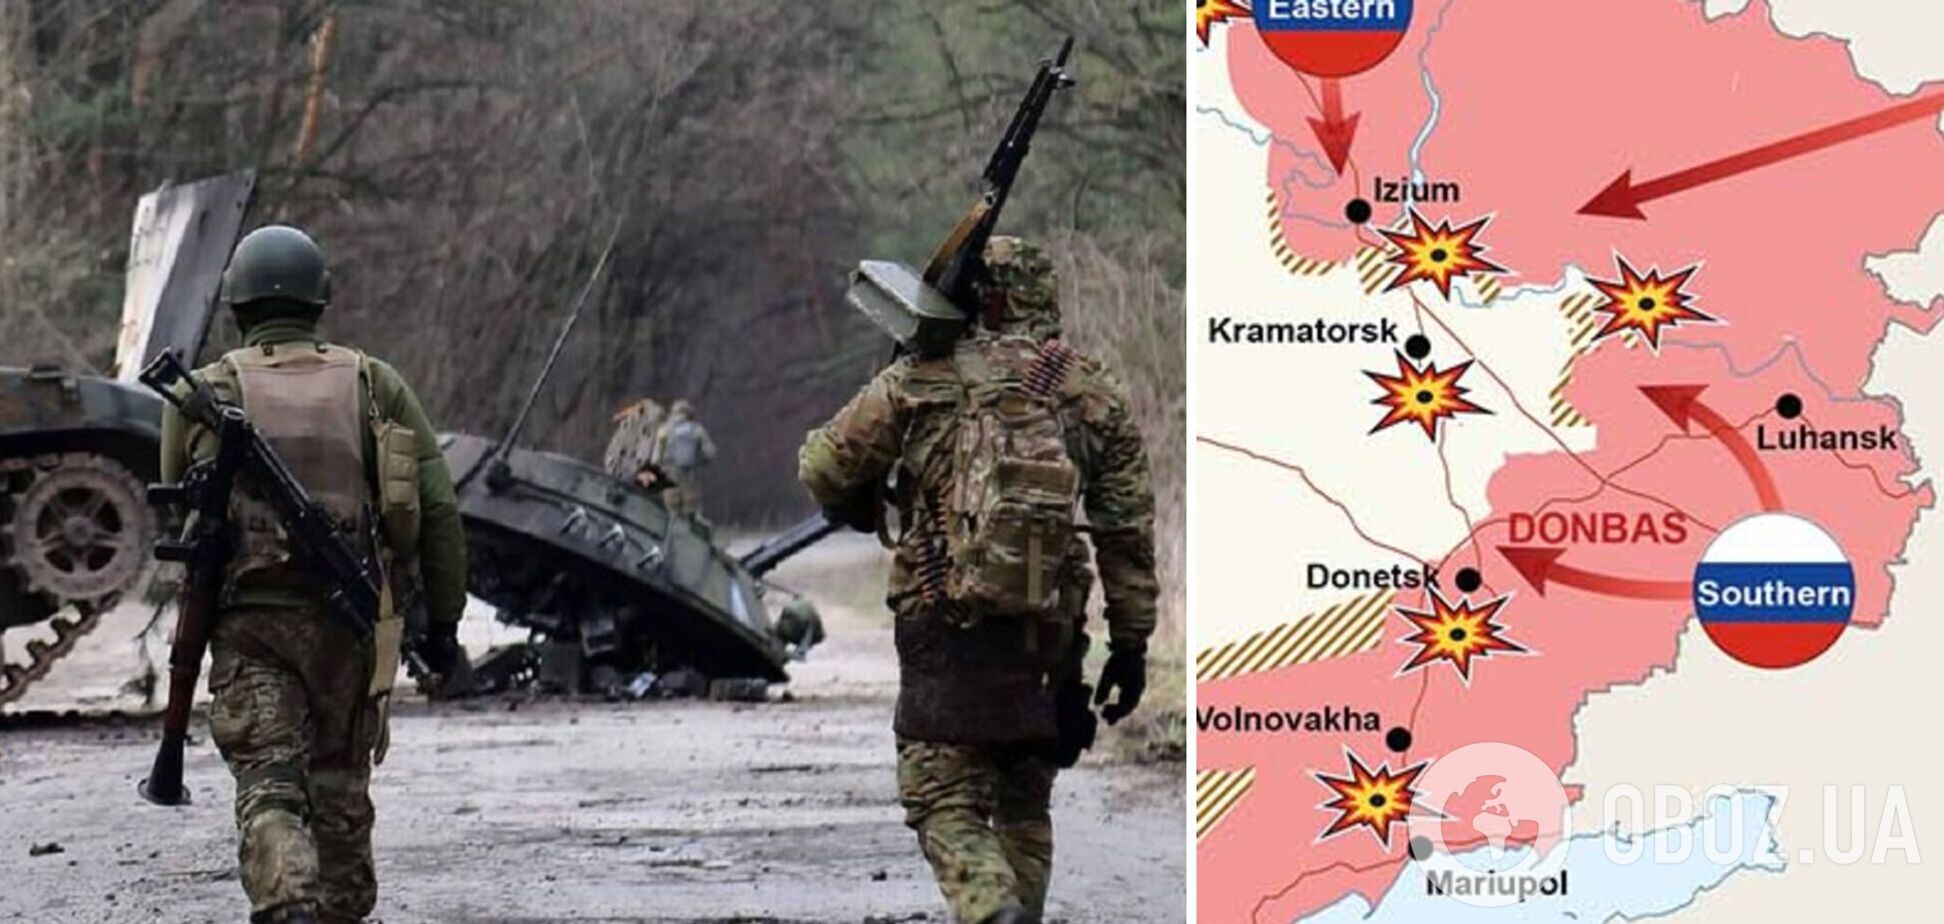 Обнародована обновленная карта боевых действий в Украине